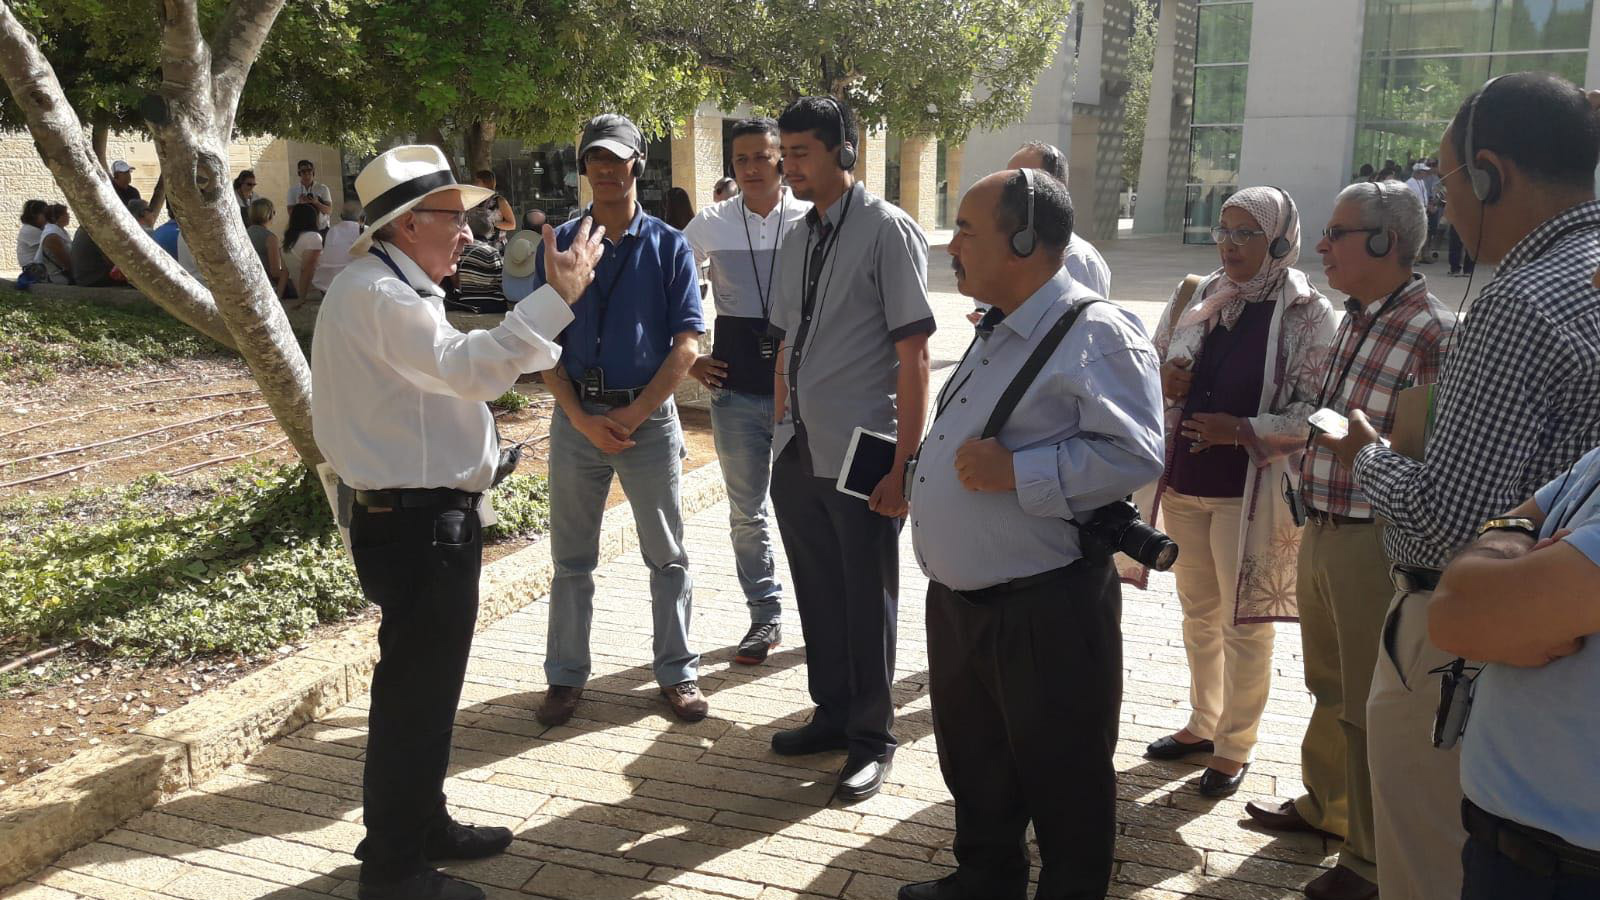 وفد من المغرب يضم منظمات مجتمع مدني خلال زيارة إلى إسرائيل وجولة في القدس (الجزيرة)